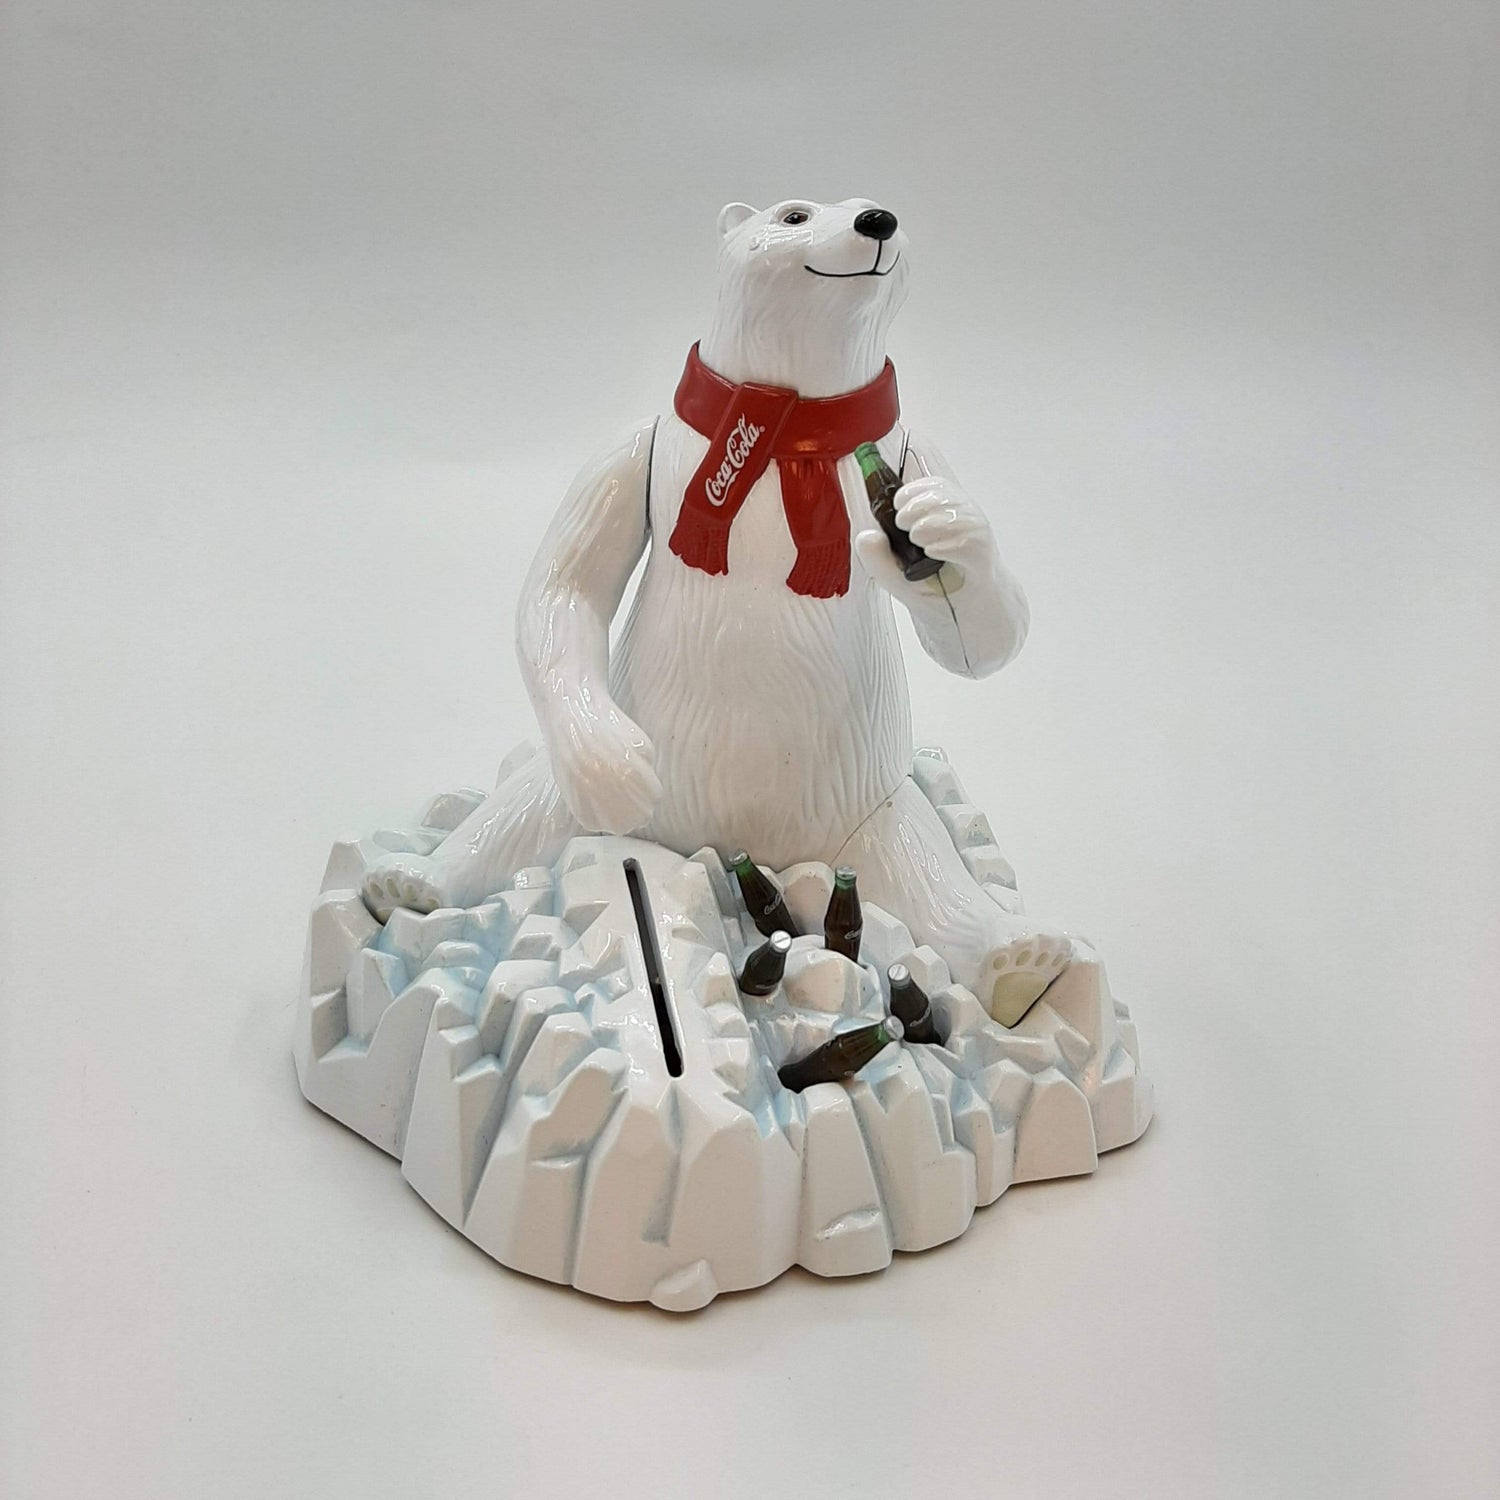 Polar Bear Mechanical Bank-Coca-Cola